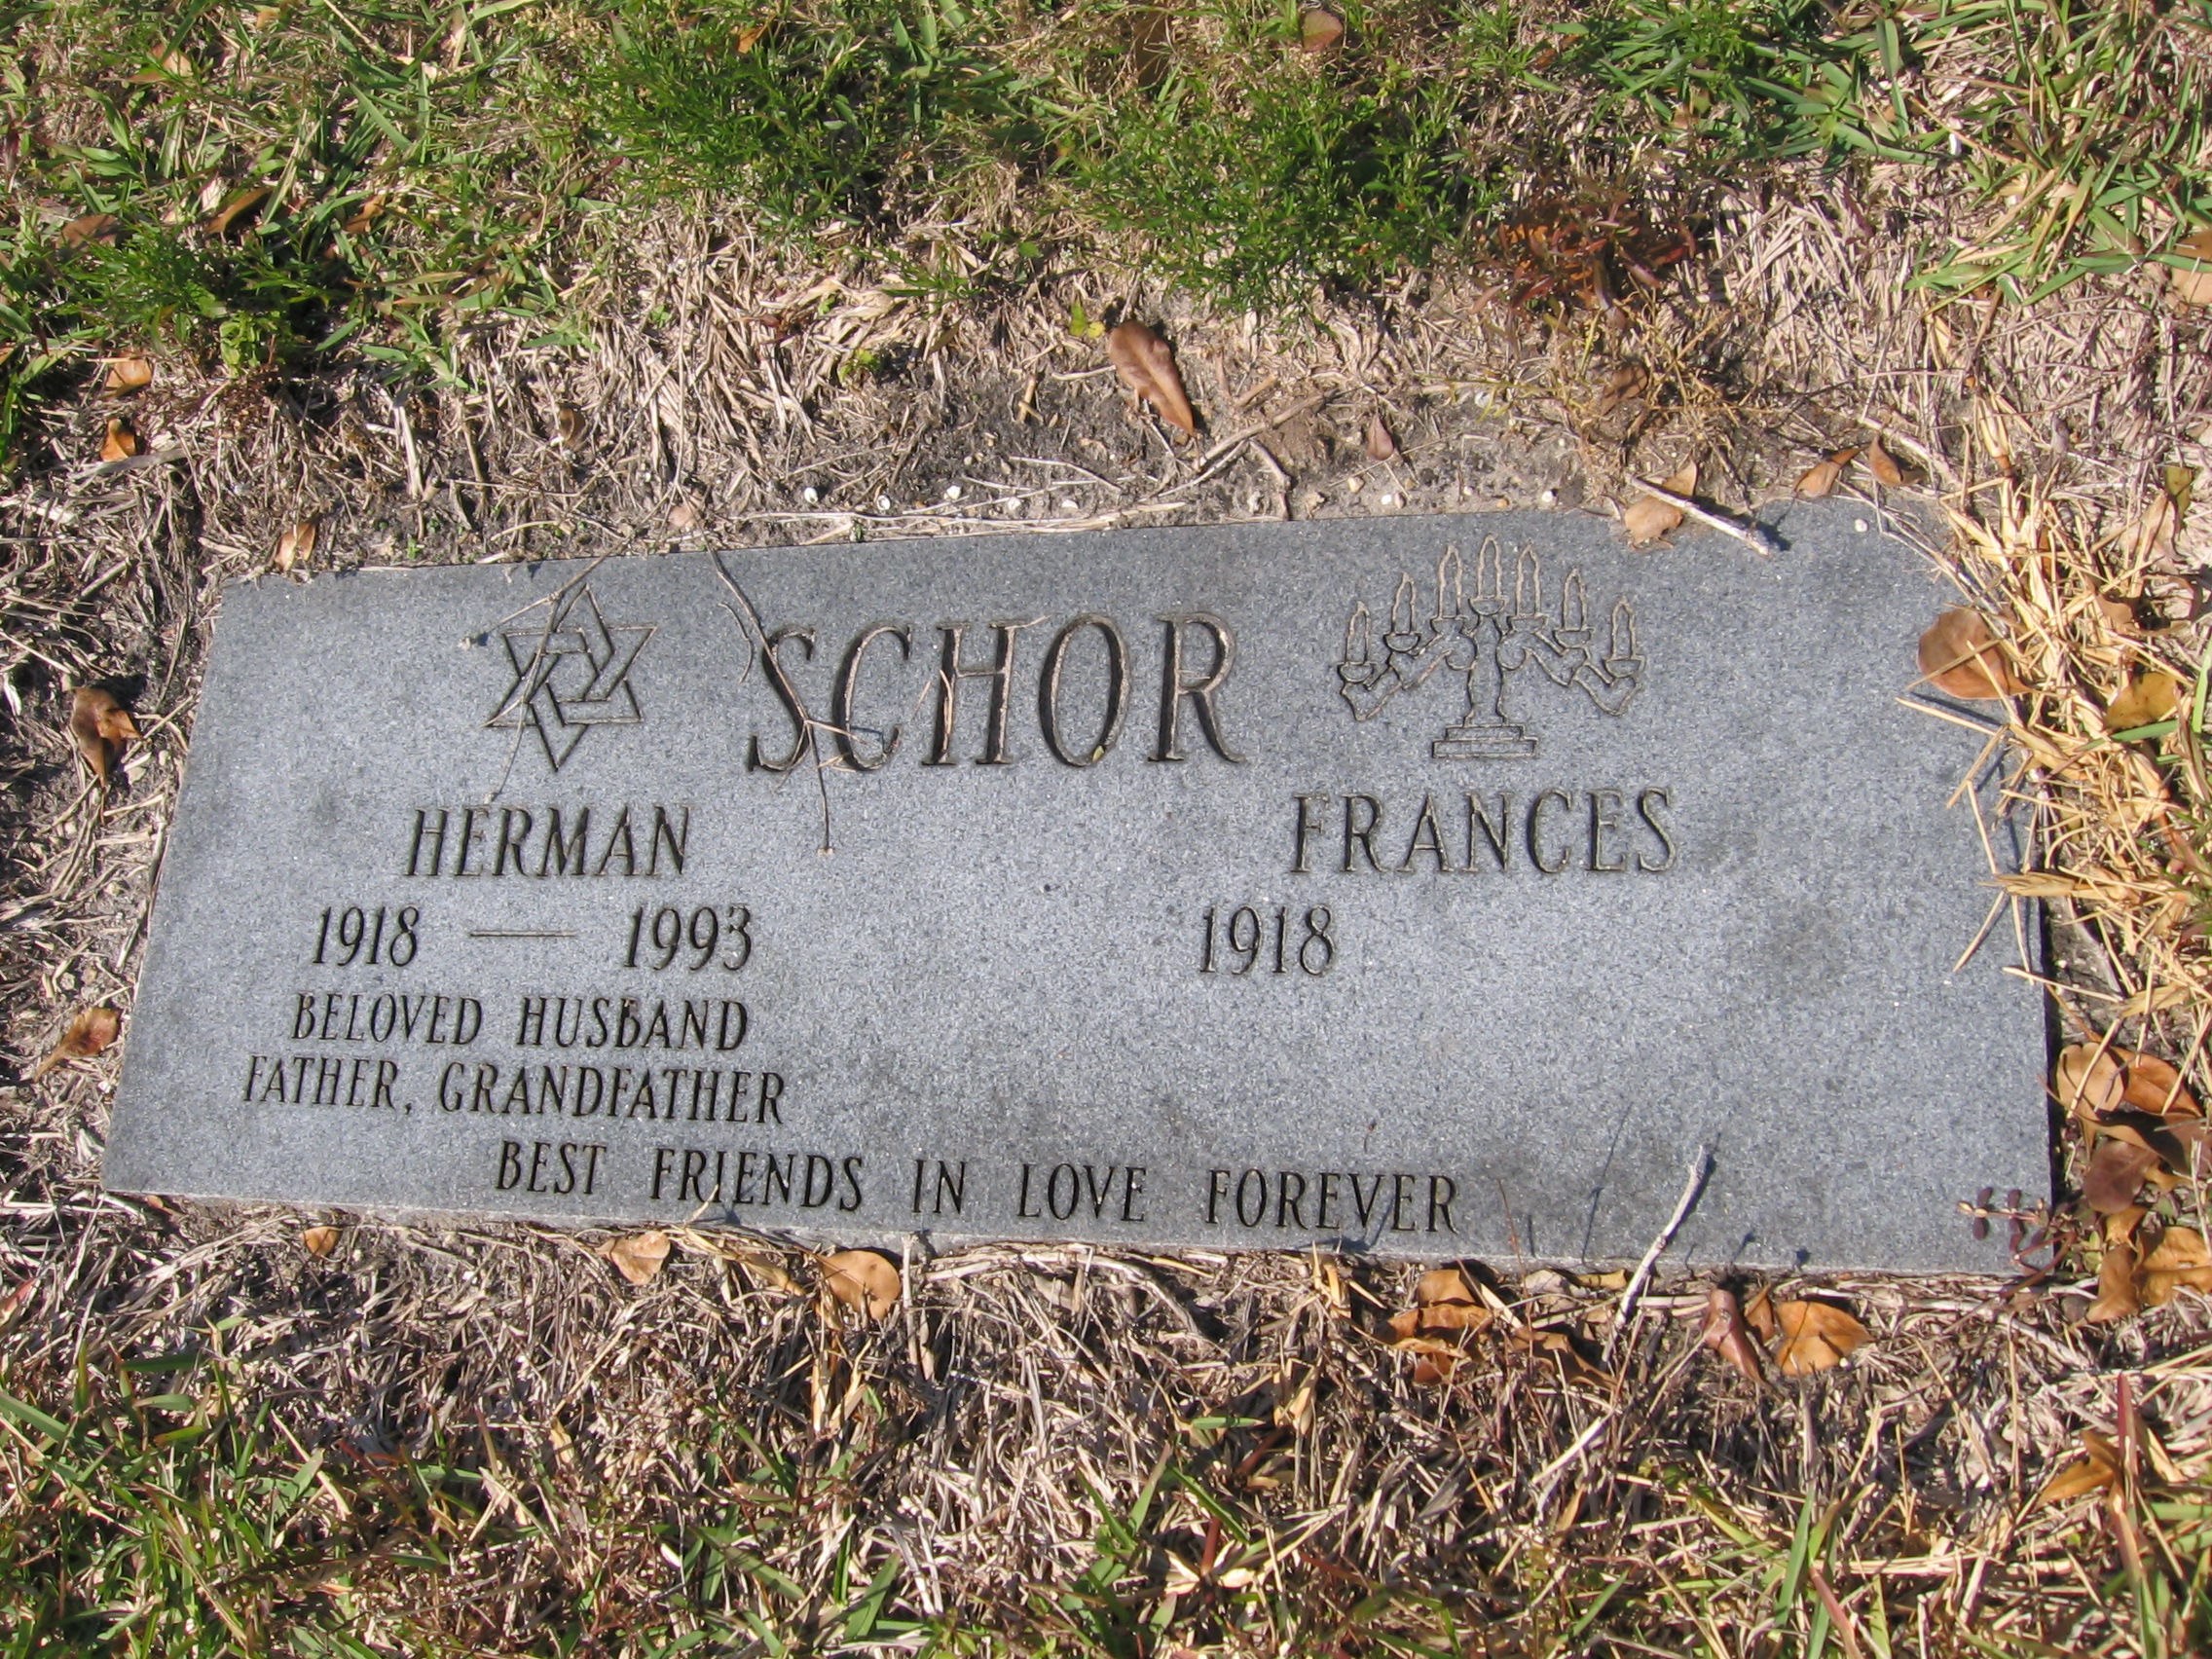 Herman Schor